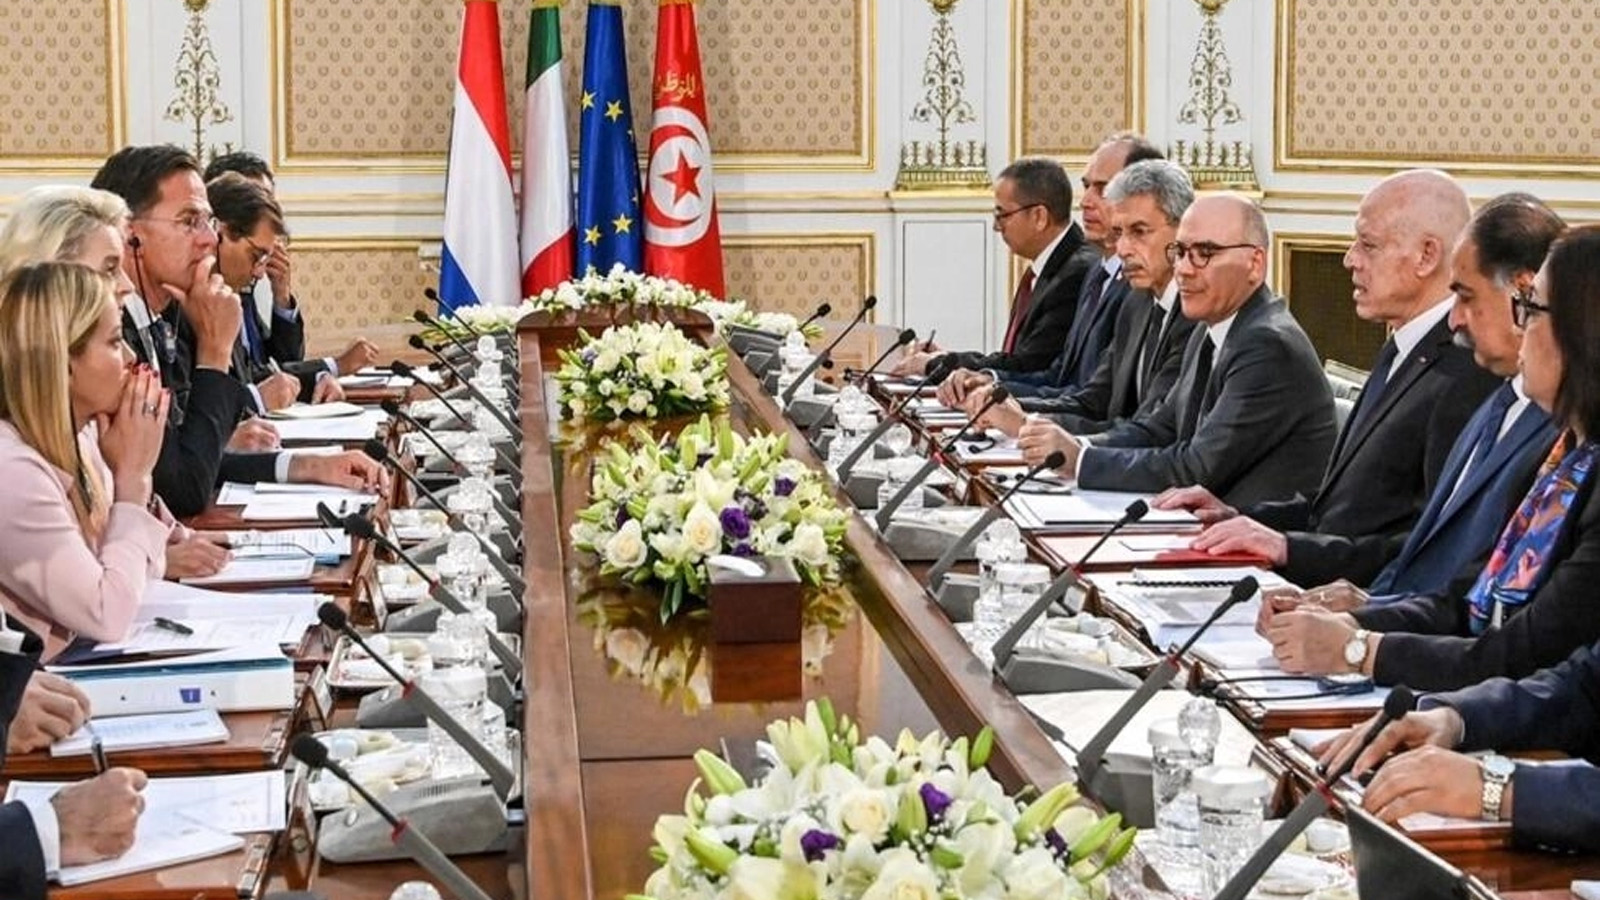 صورة قدمتها الخدمة الصحفية للرئاسة التونسية للرئيس التونسي قيس سعيد (الثالث إلى اليمين) إلى جانب مسؤولين تونسيين في اجتماع مع وفد أوروبي يضم رئيسة الوزراء الإيطالية جيورجيا ميلوني (يسار)، ورئيسة المفوضية الأوروبية أورسولا فون دير لاين (الثانية إلى اليسار)، رئيس الوزراء الهولندي مارك روته (الثالث من اليسار) في قصر قرطاج في 11 يونيو(تموز) 2023